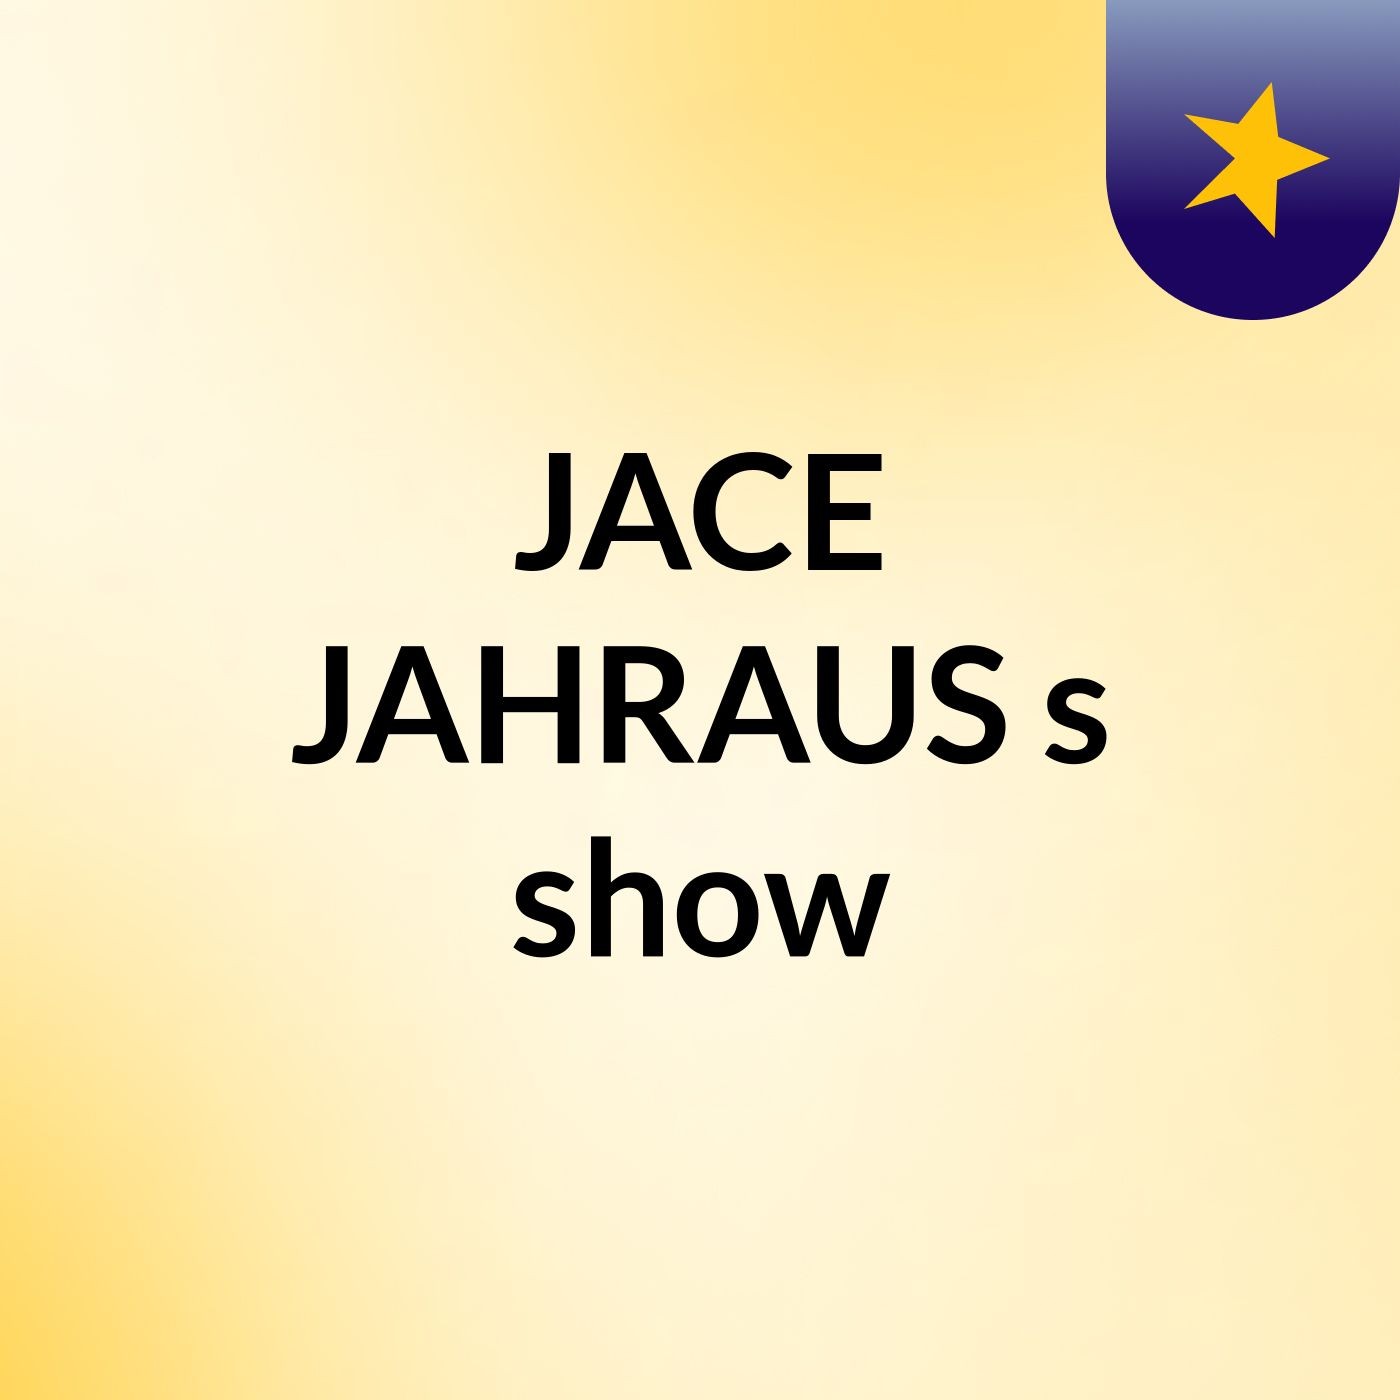 JACE JAHRAUS's show